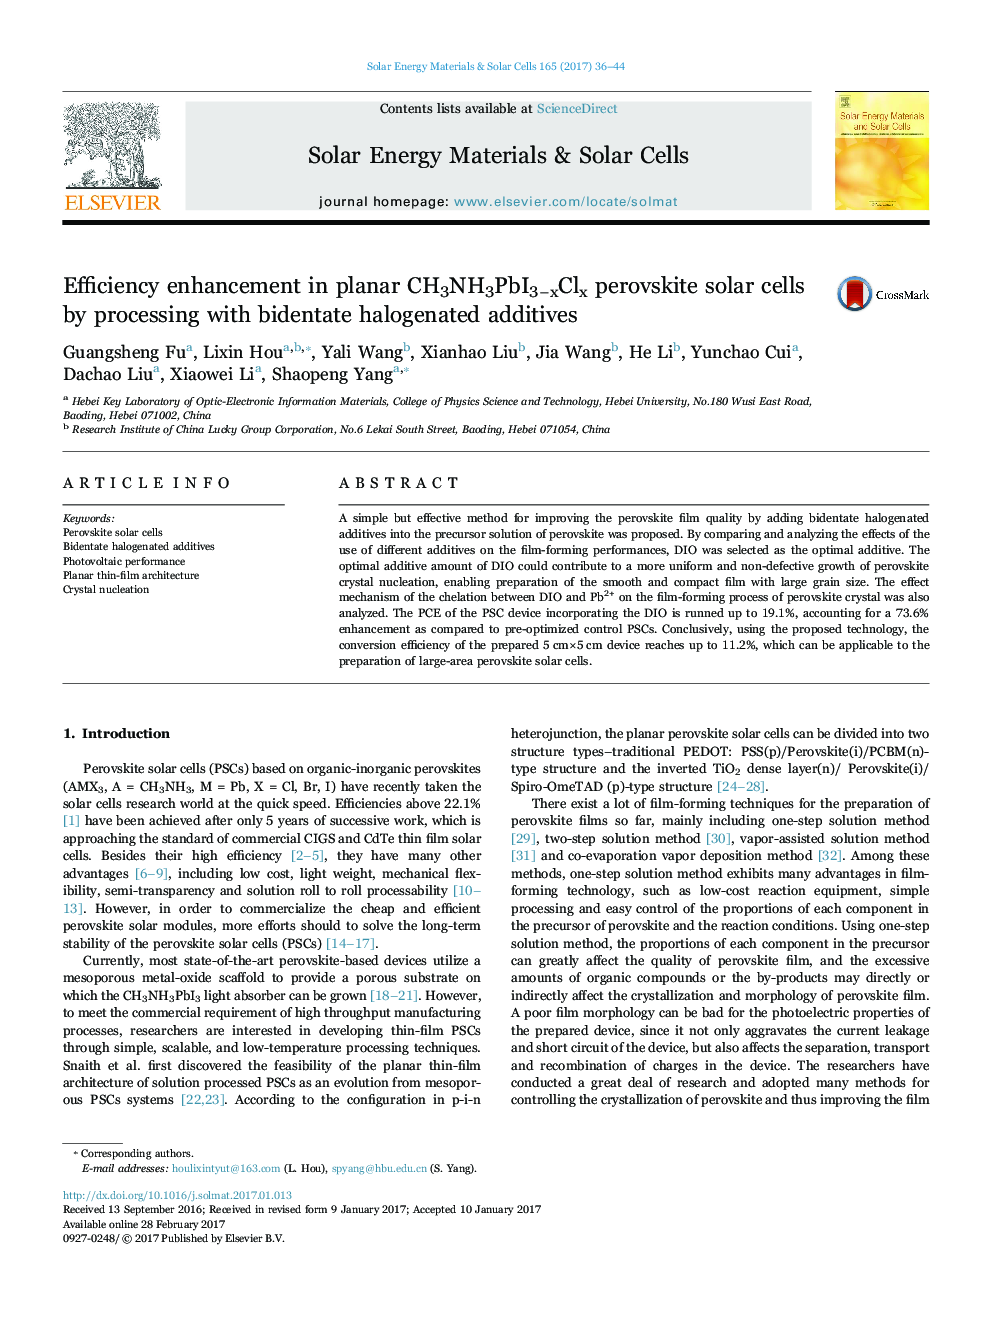 Efficiency enhancement in planar CH3NH3PbI3âxClx perovskite solar cells by processing with bidentate halogenated additives